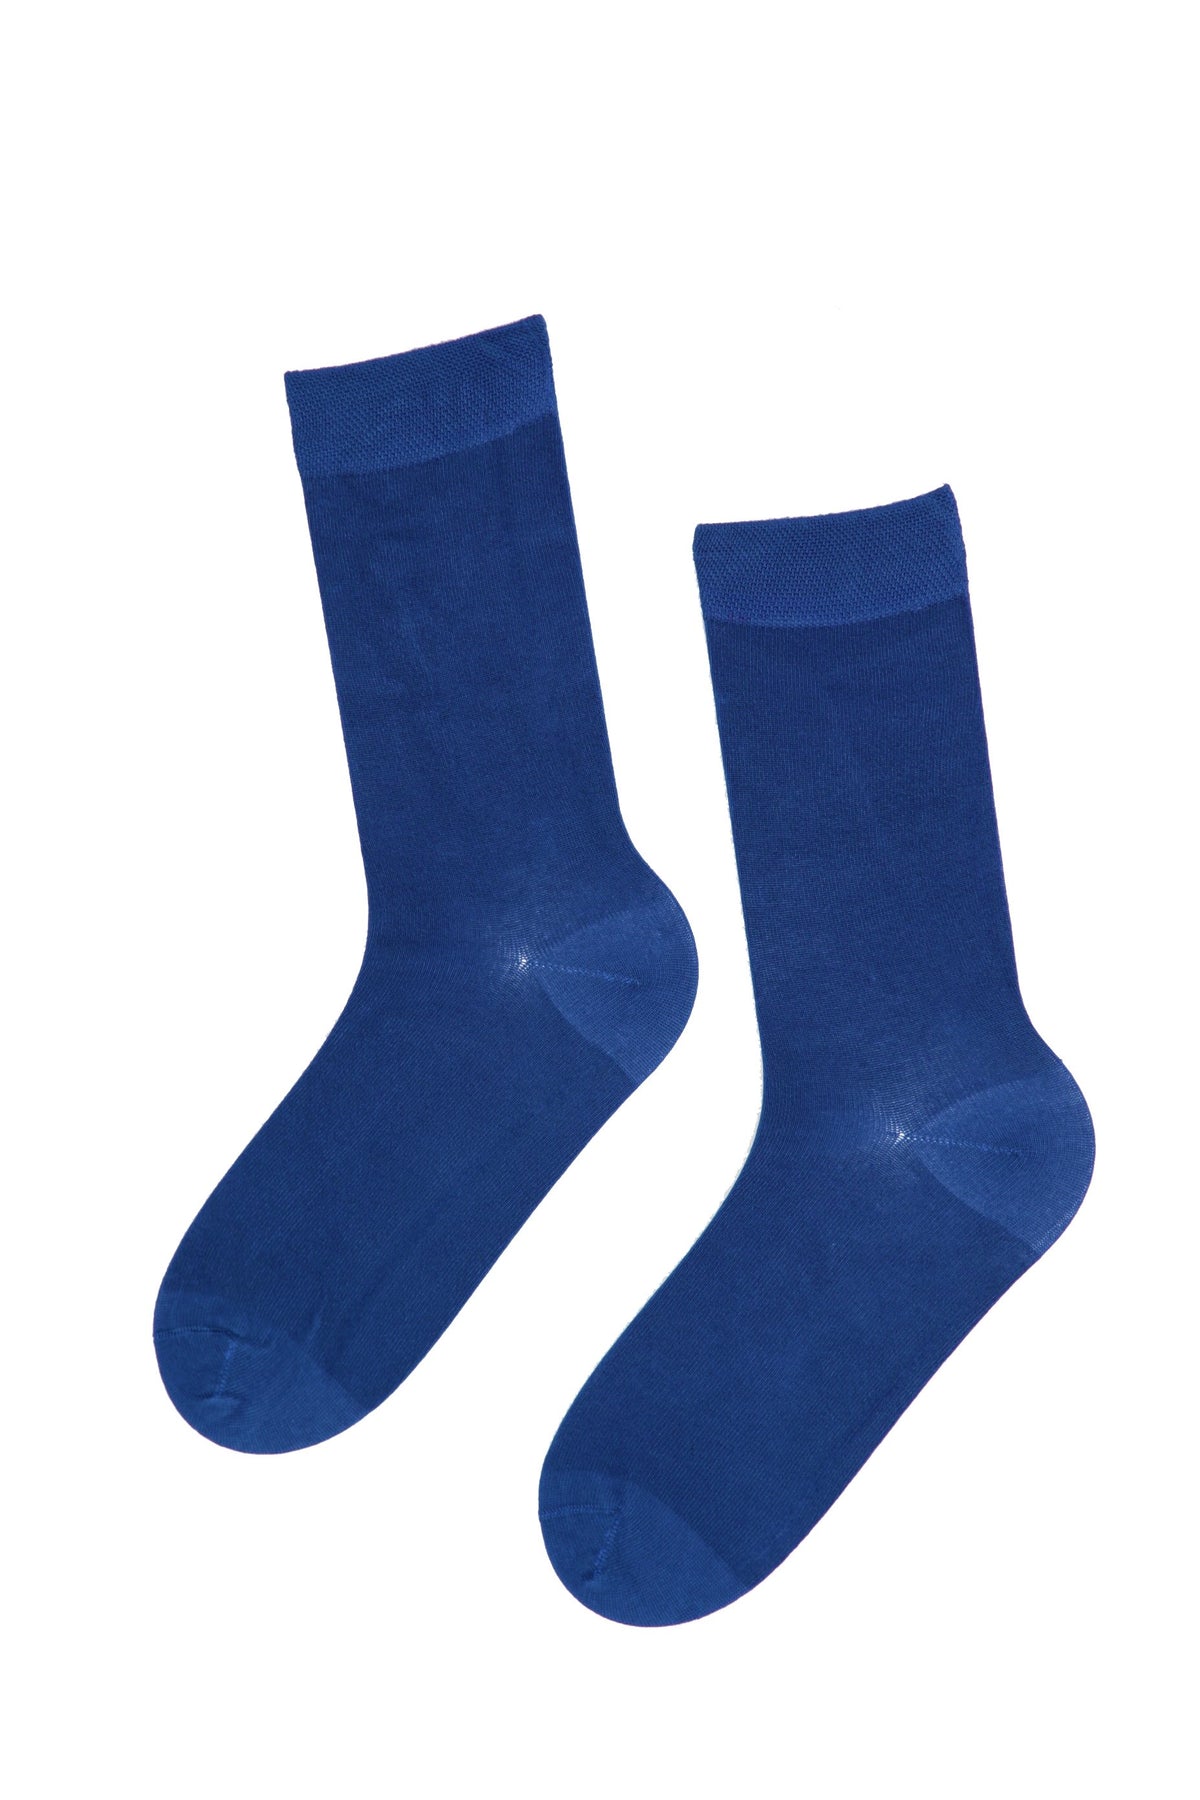 JANNE women's dark blue socks